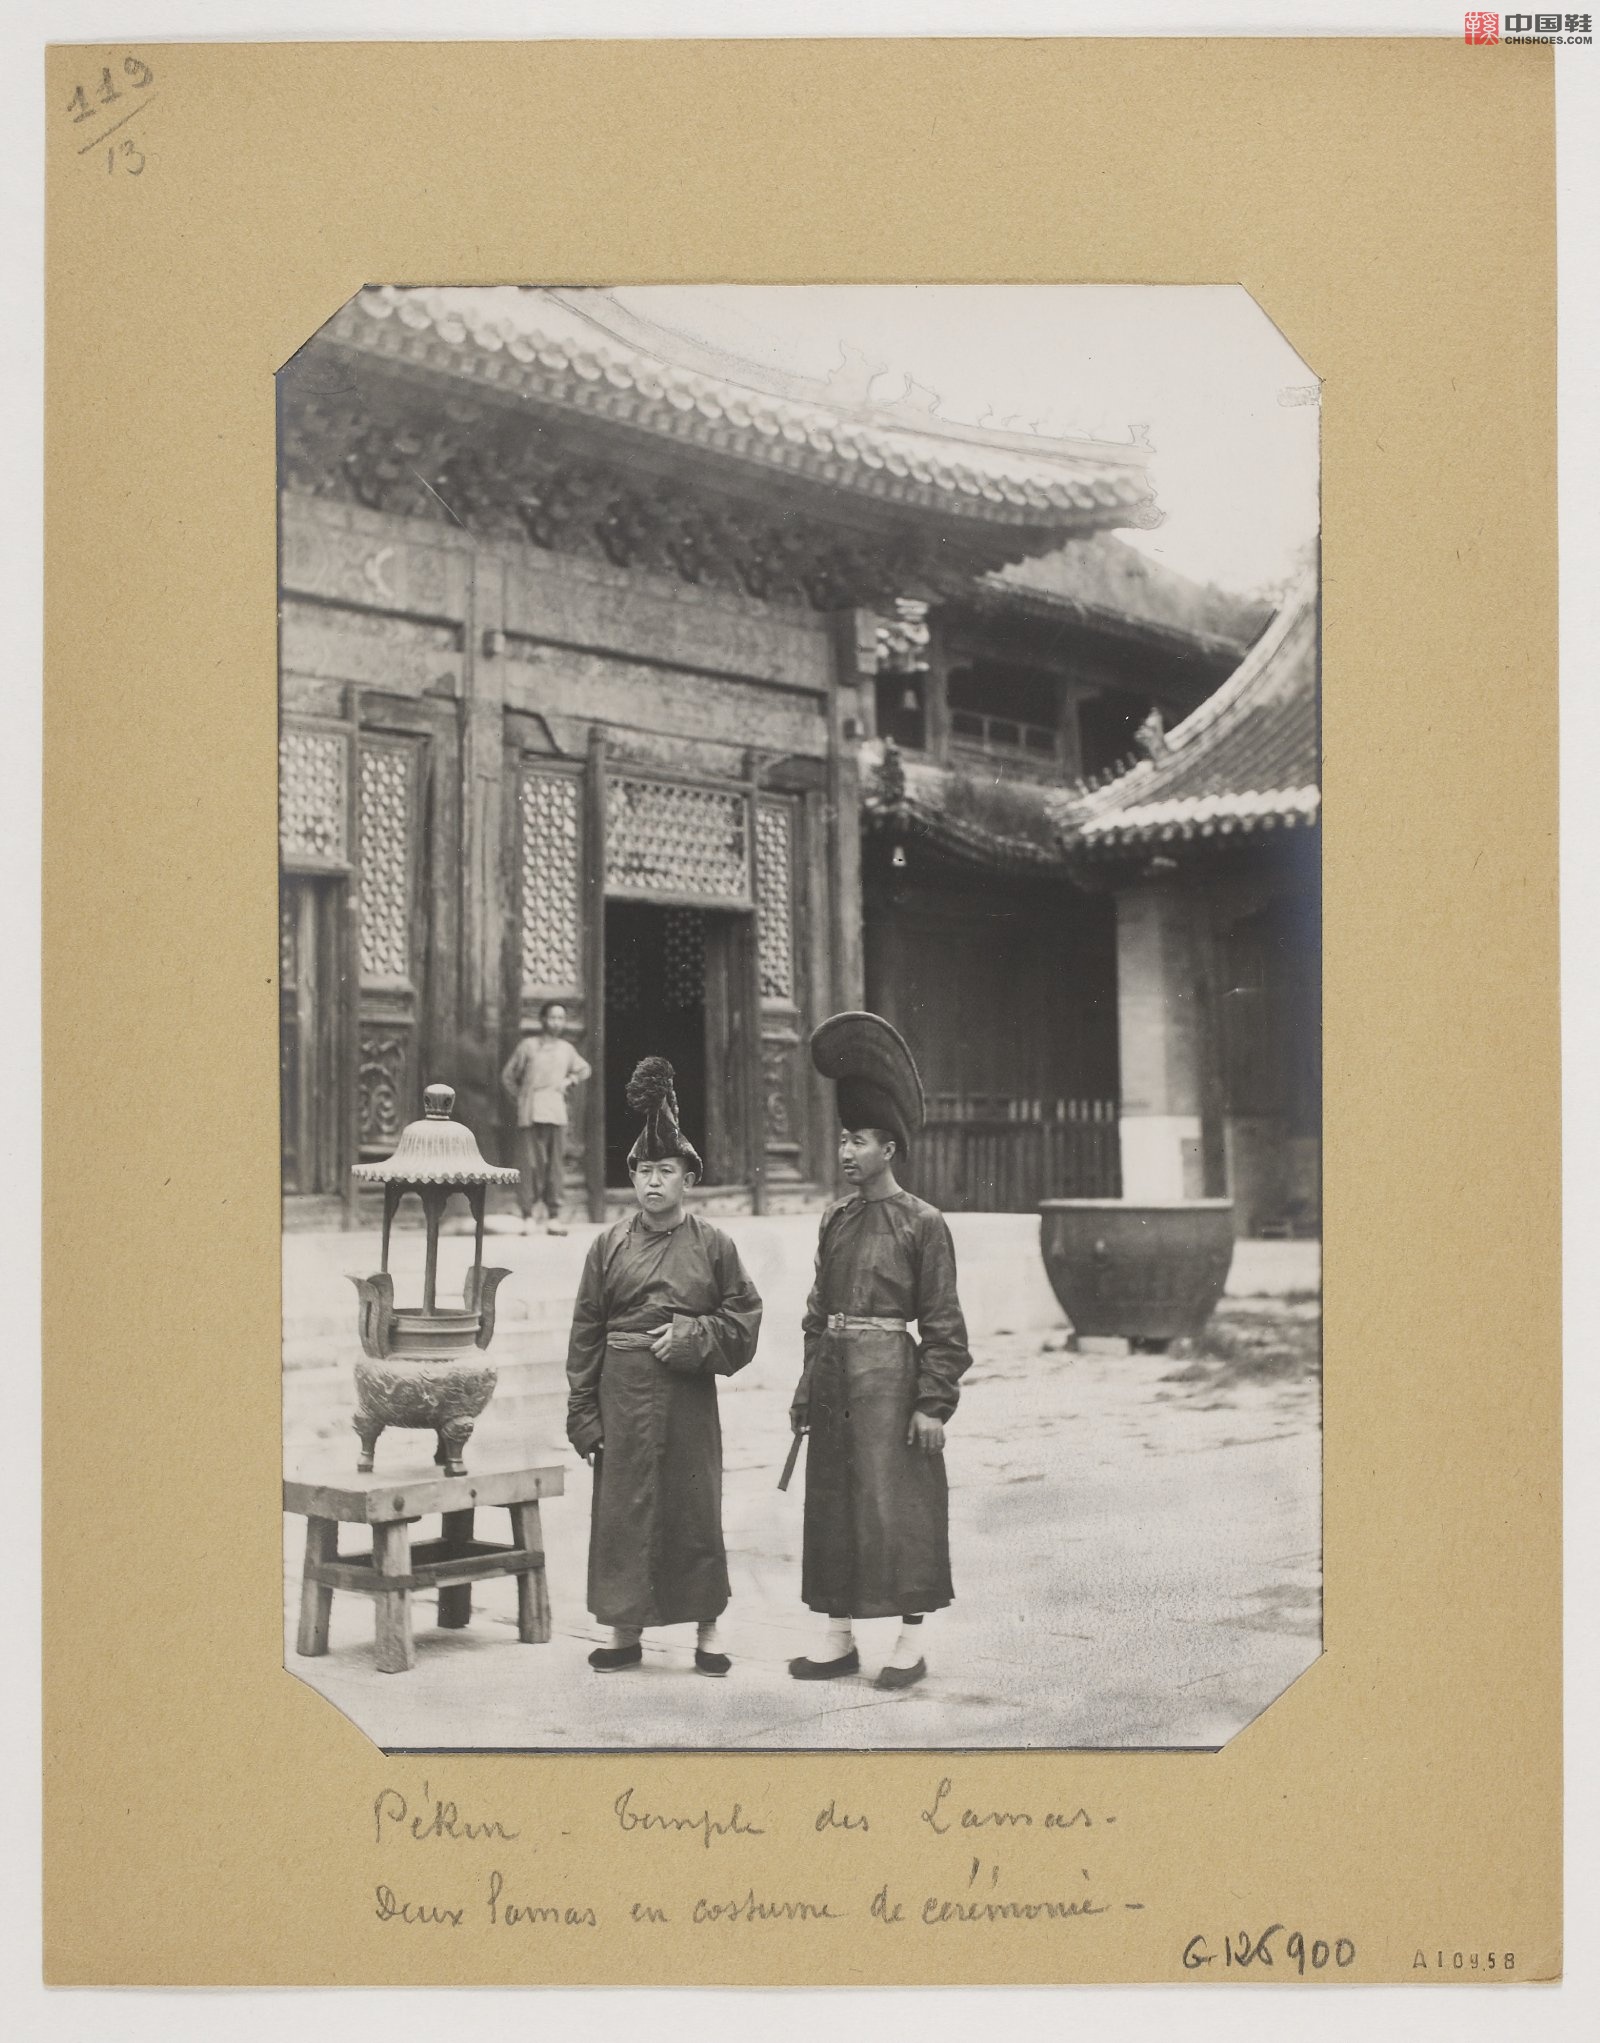 拉里贝的中国影像记录.415幅.By Firmin Laribe.1900-1910年_Page_334.jpg